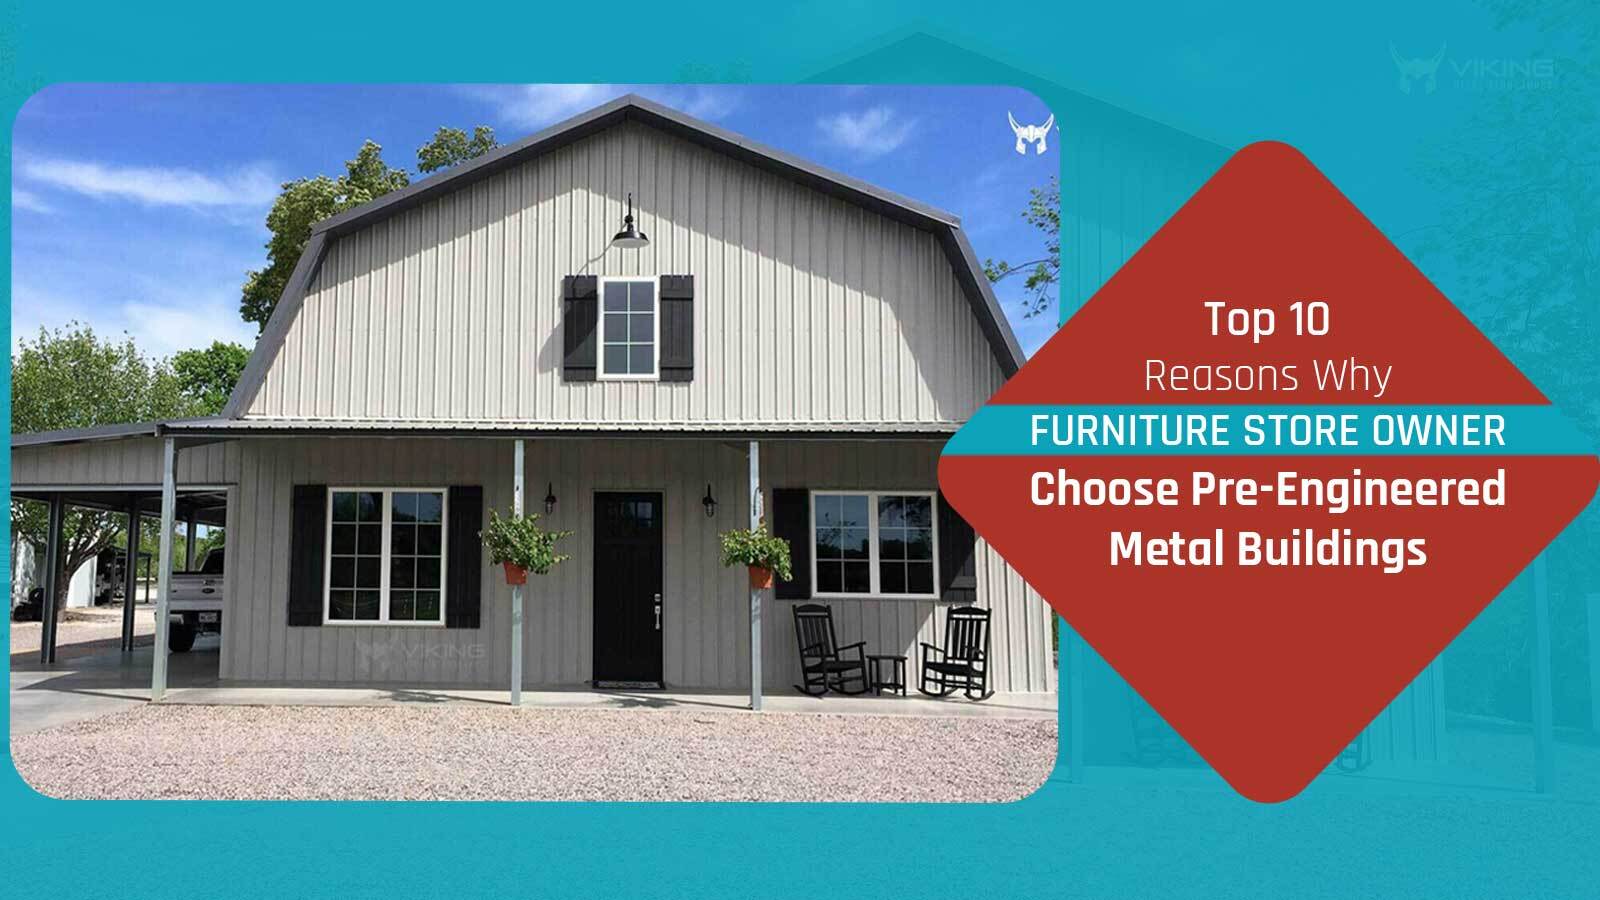 Top 10 Reasons Why Furniture Store Owner Choose Pre-engineered Metal Buildings